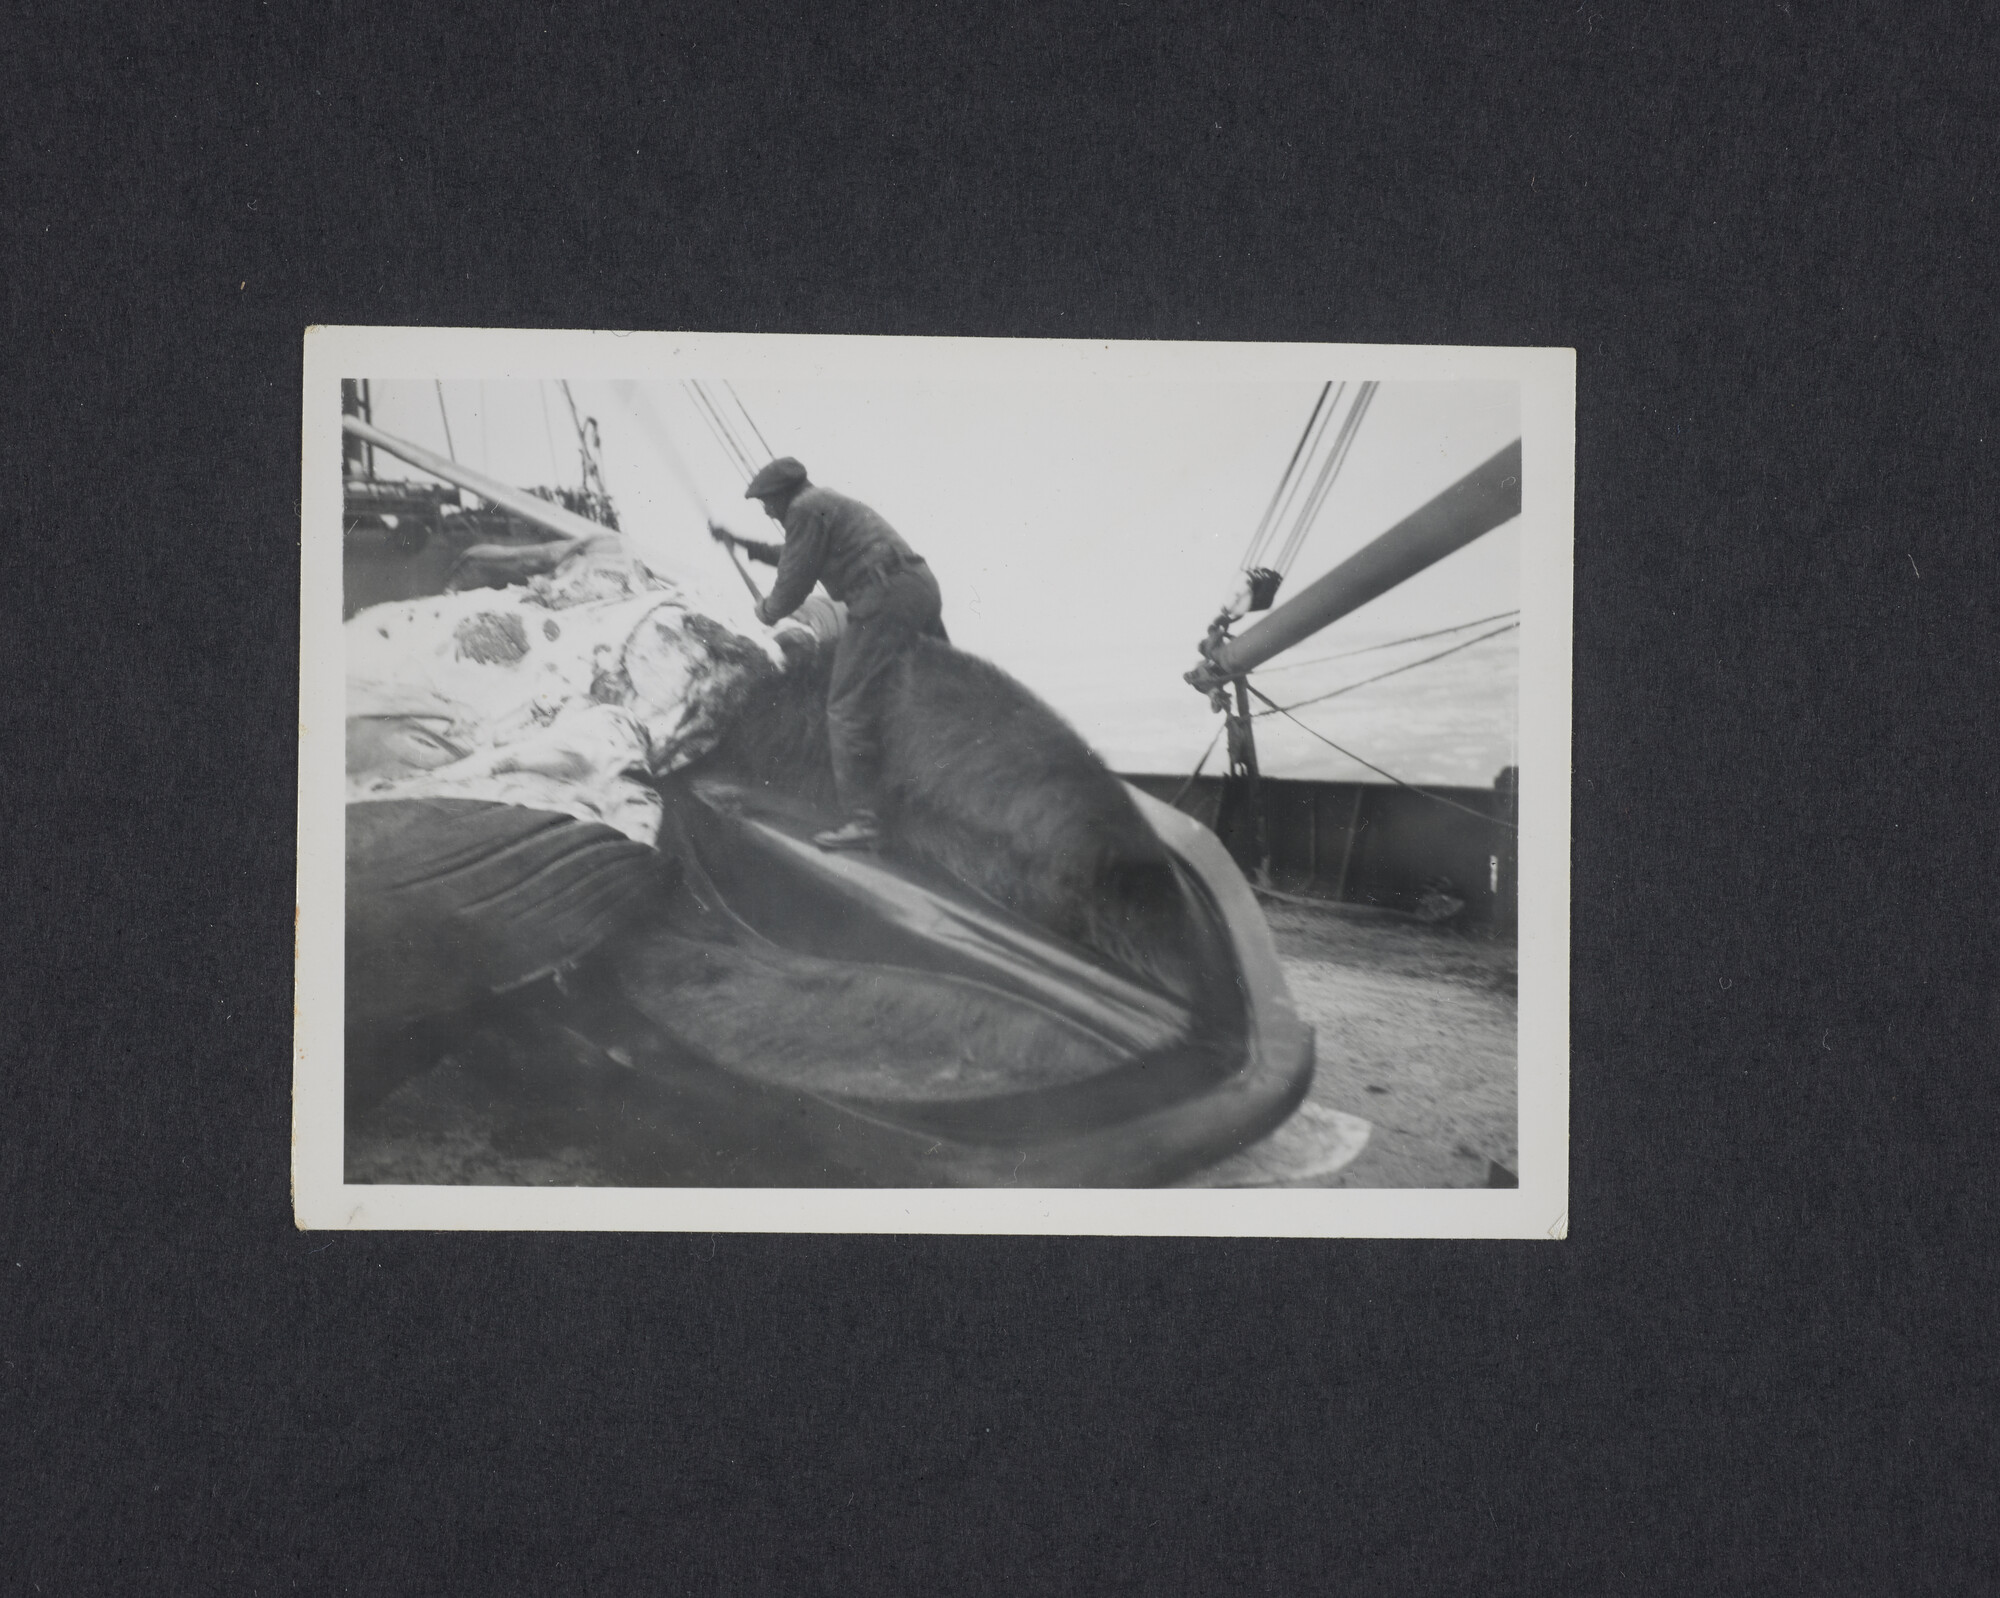 2016.2643; Zwart-wit foto van het slachten van een vinvis a/b de Willem Barendsz (I); foto